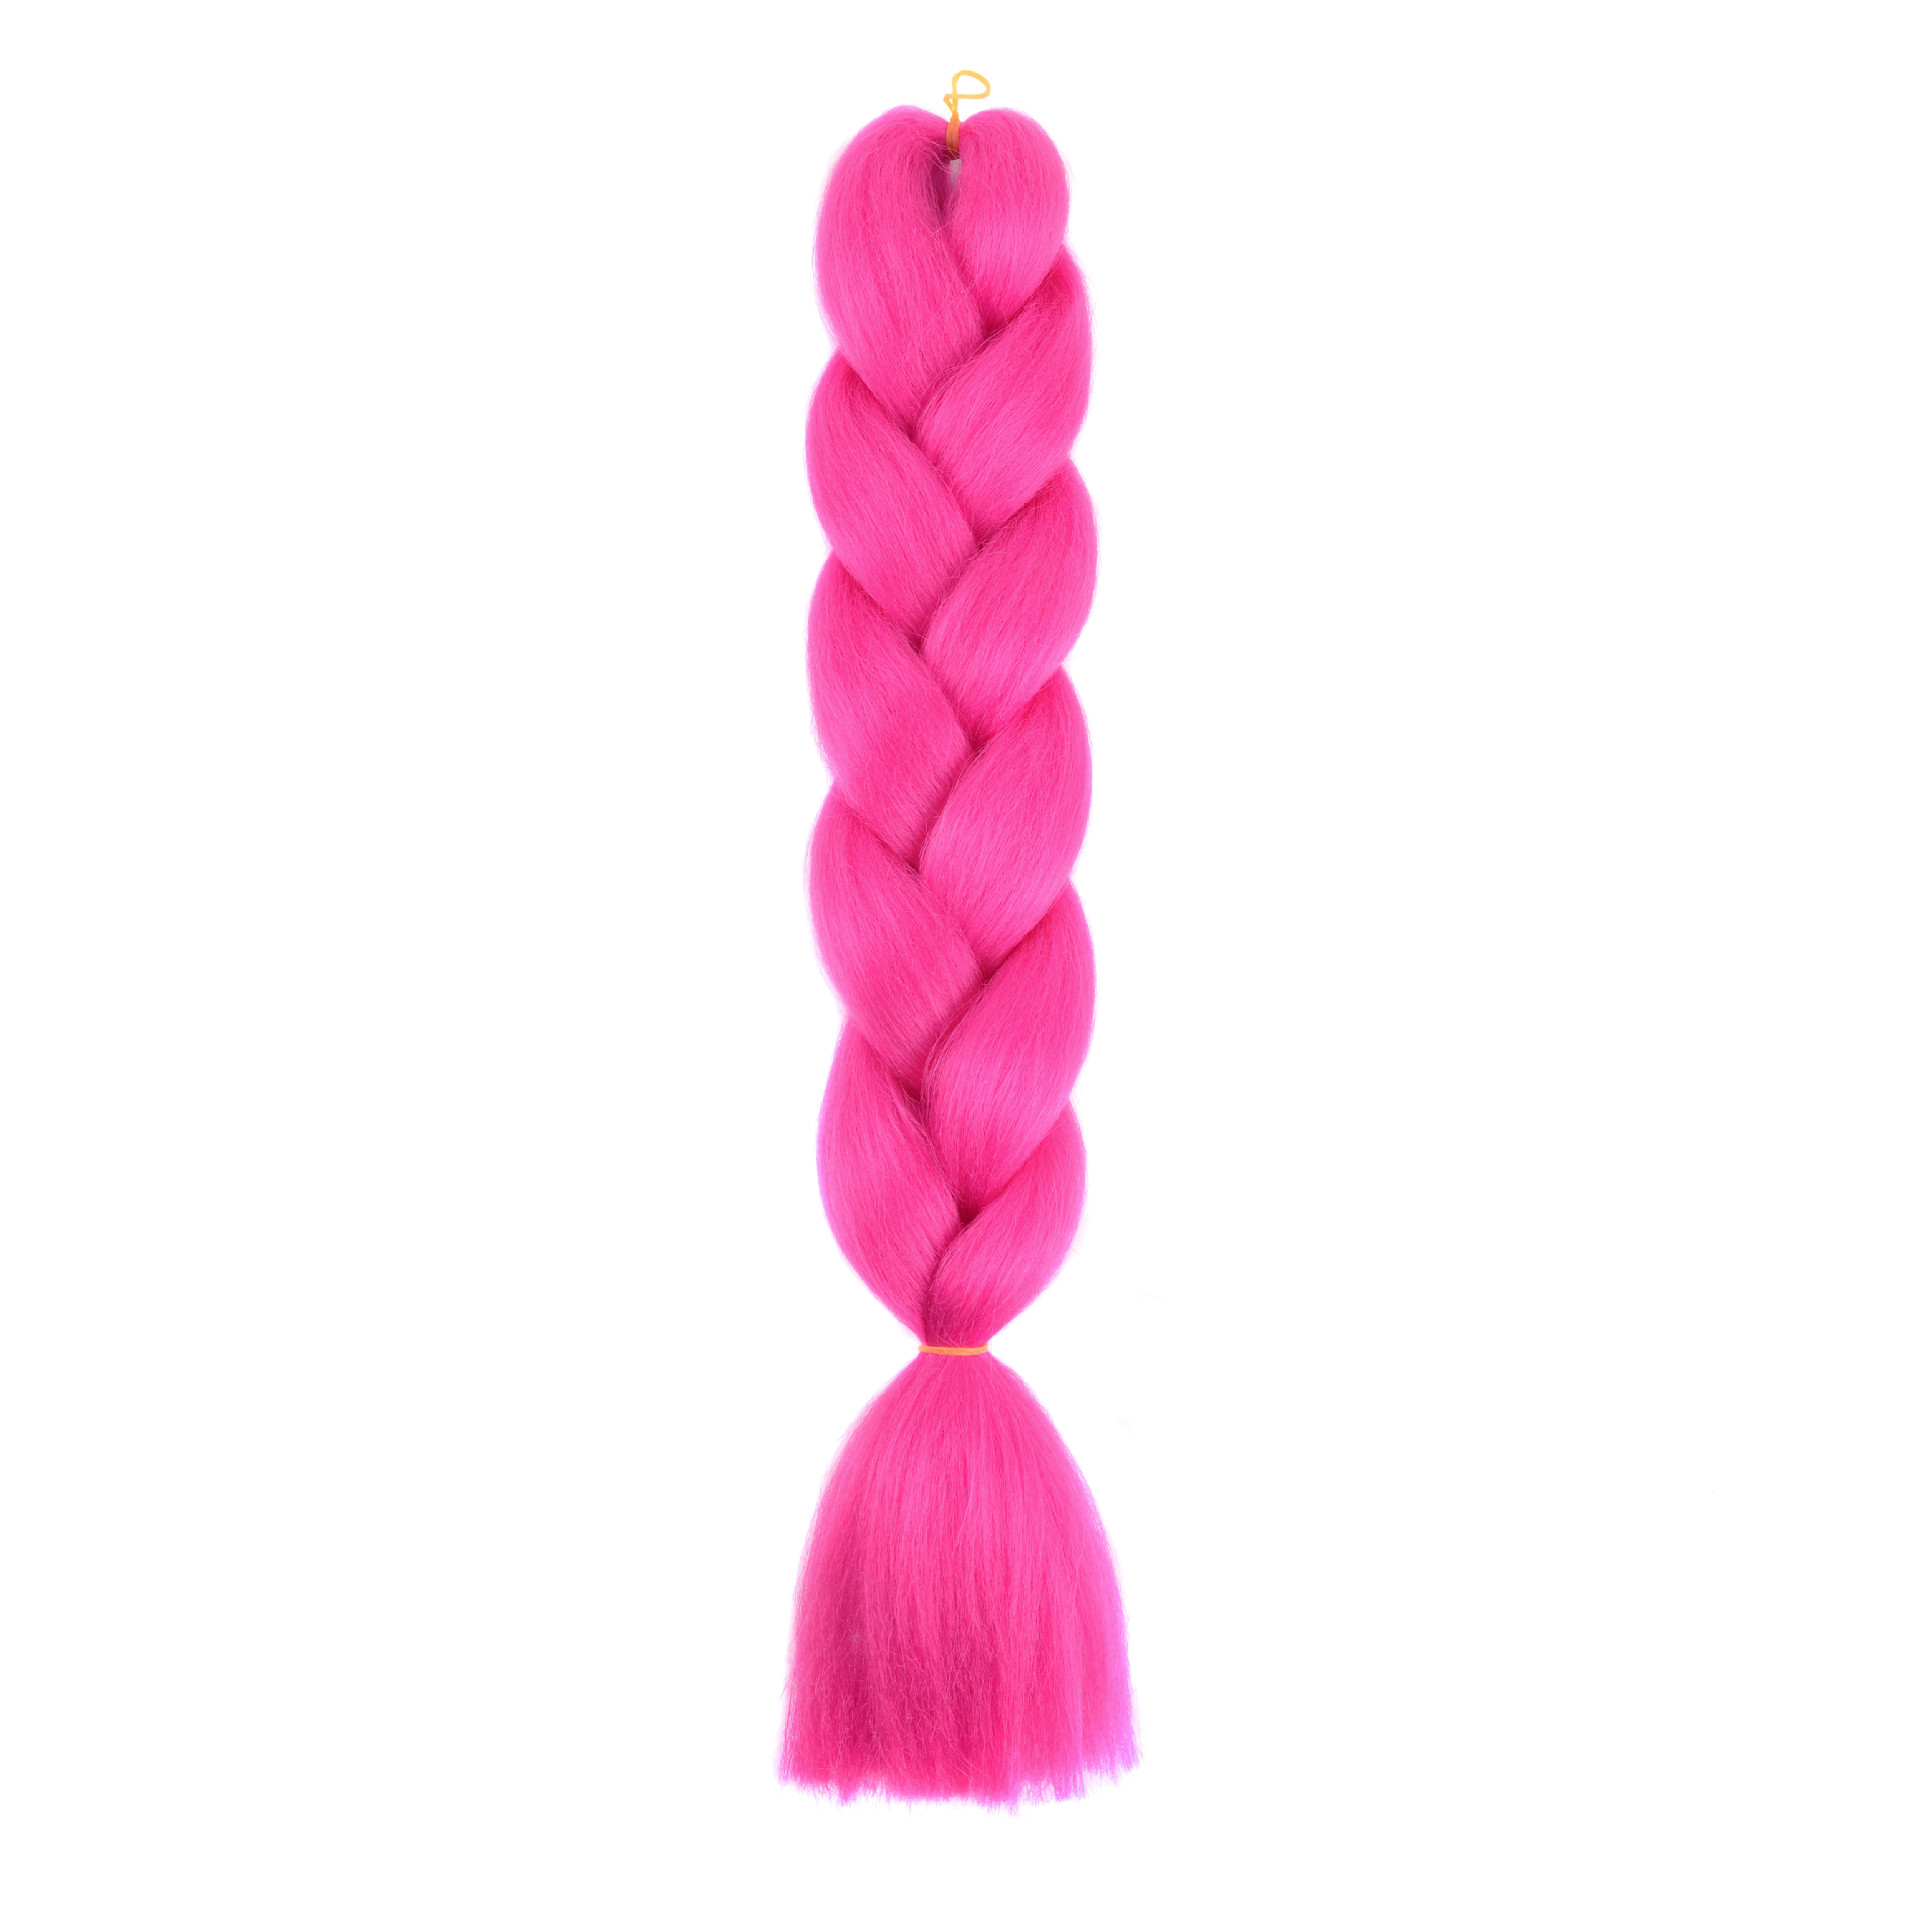 Big braid monochrome colorful chemical fiber big braid African dirty braid wig hair extension braided hair dirty braid twist braid